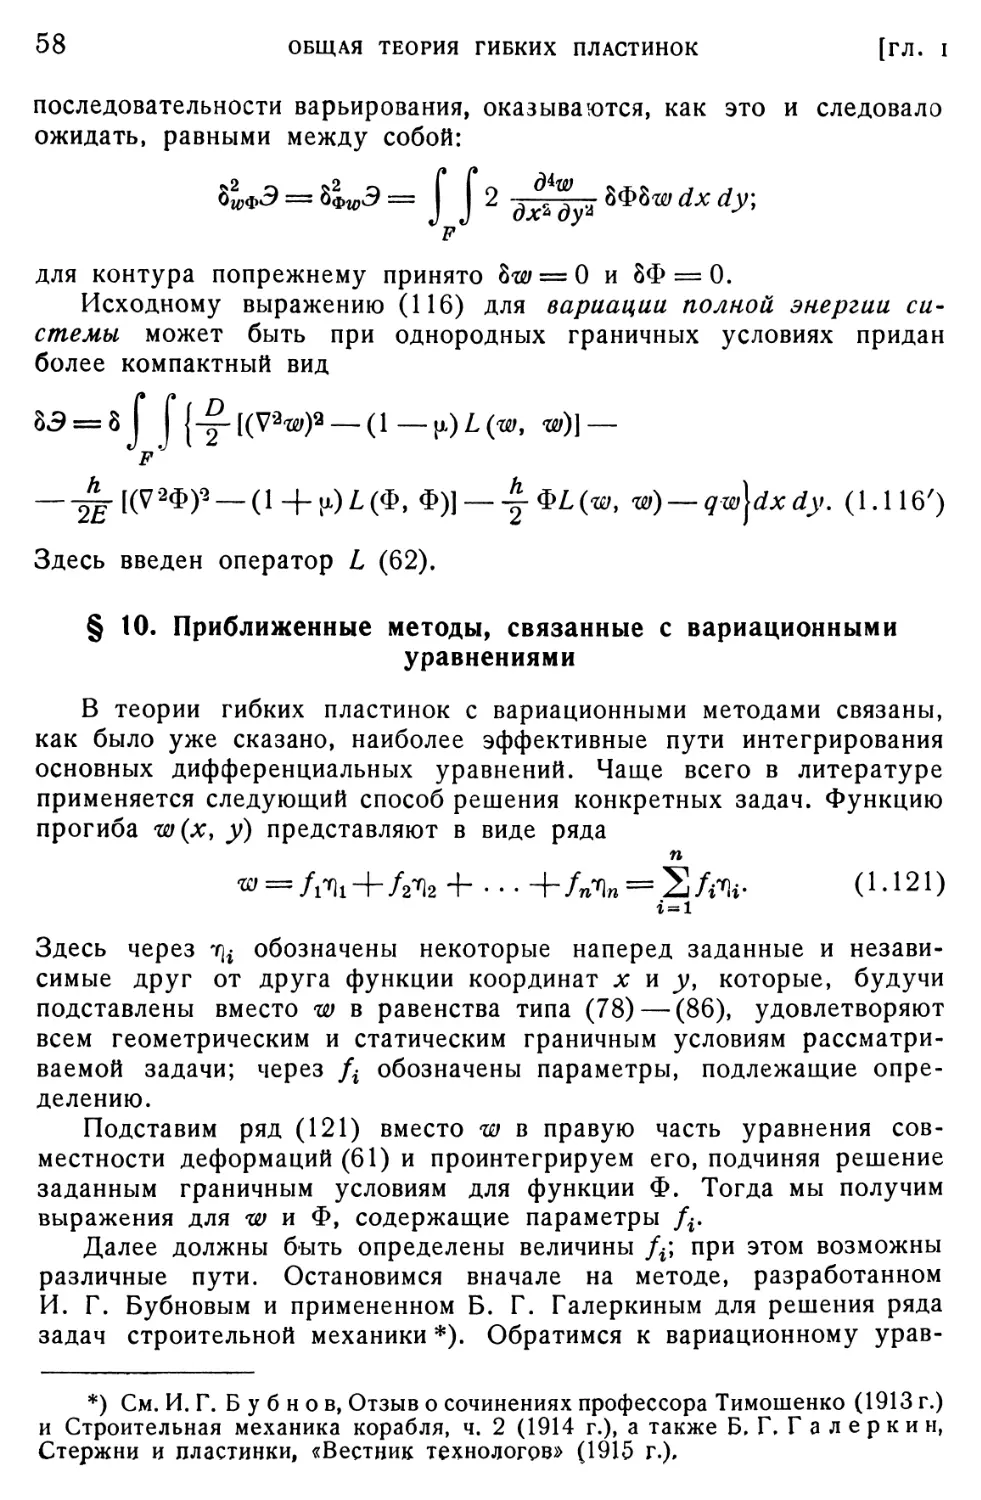 § 10. Приближенные методы, связанные с вариационными уравнениями